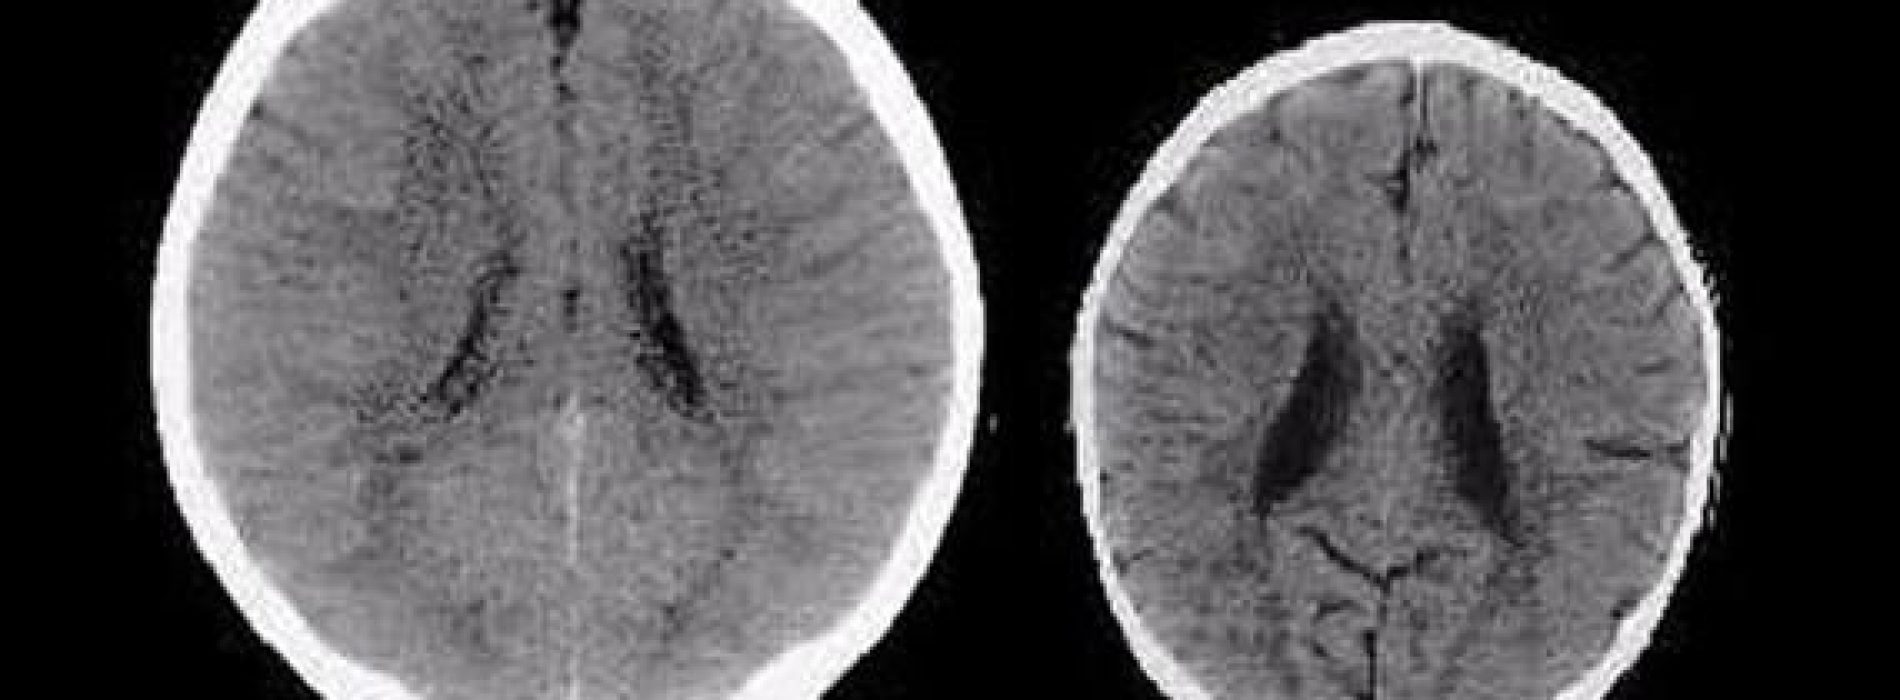 Hersenscans laten de echte impact zien die liefde heeft op de hersenen van een kind